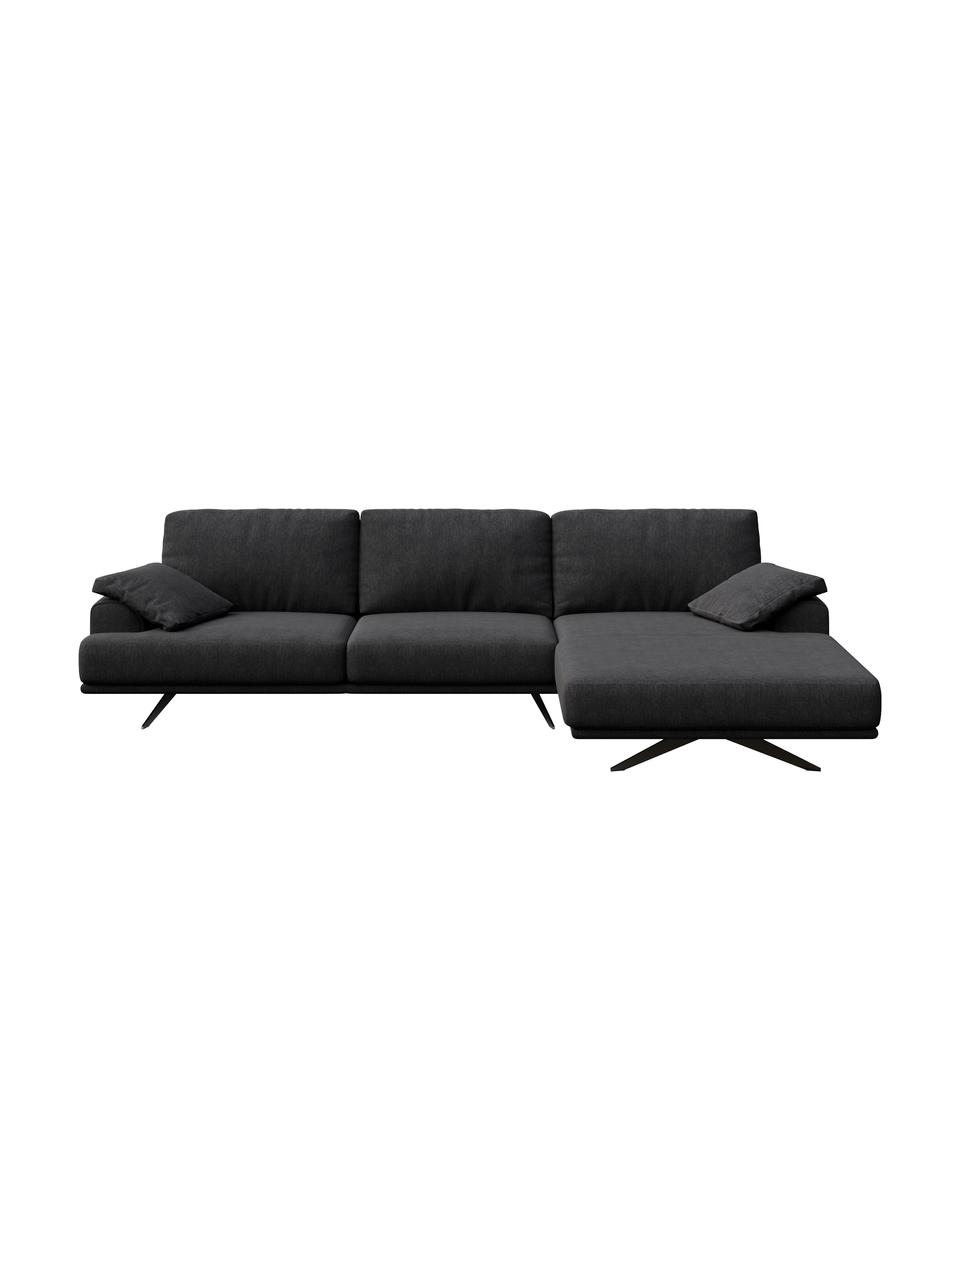 Sofa narożna Prado, Tapicerka: 100% poliester, Nogi: metal lakierowany, Ciemny szary, S 315 x G 180 cm